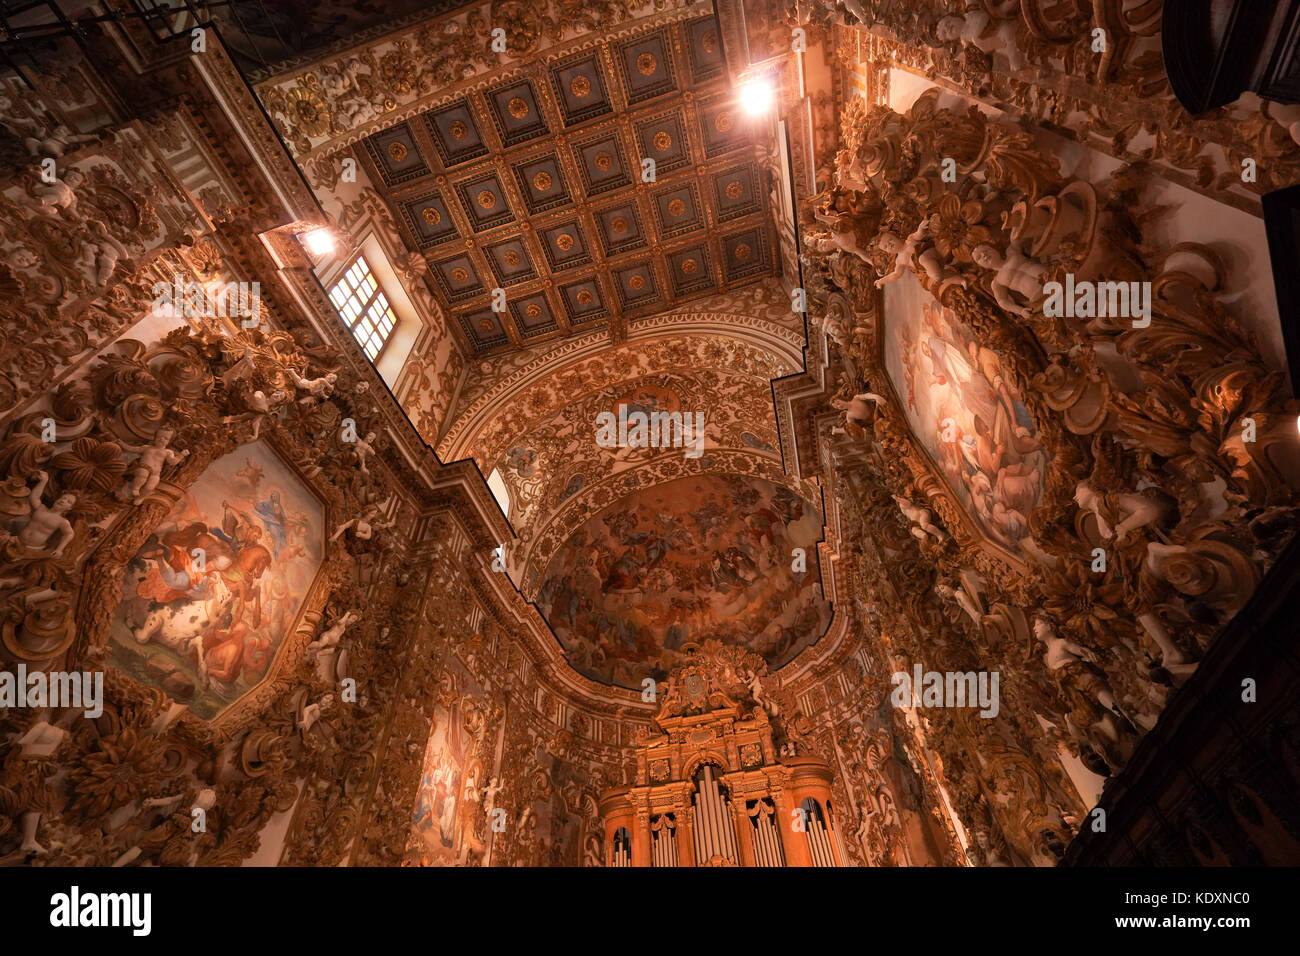 Gli interni della cattedrale barocca in agrigento. da una serie di foto di viaggio in Sicilia, Italia. photo Data: giovedì, 5 ottobre 2017. foto cred Foto Stock